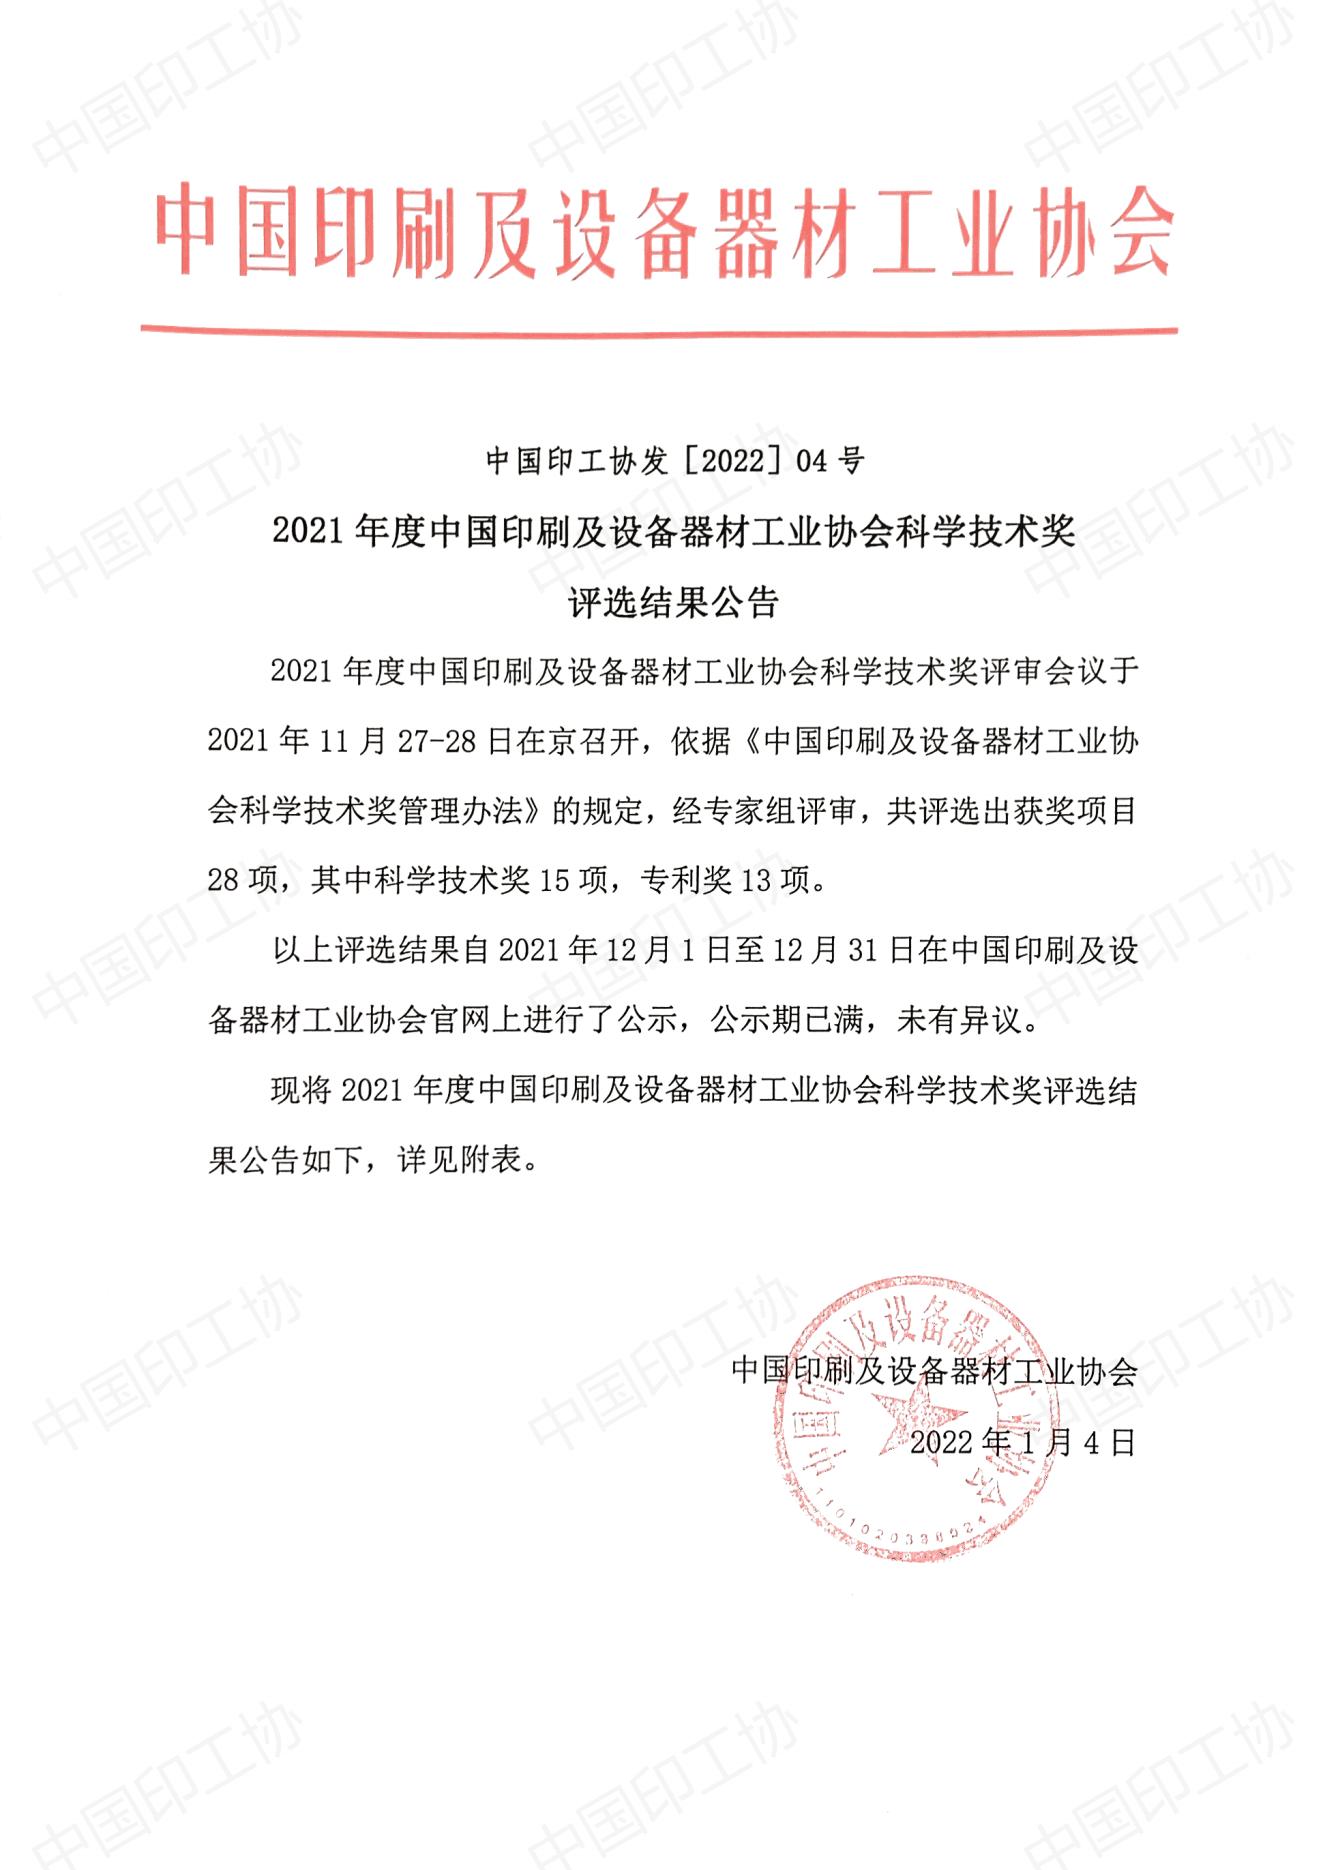 2021年度中國印刷及設備器材工業協會科學技術獎評選結果公告